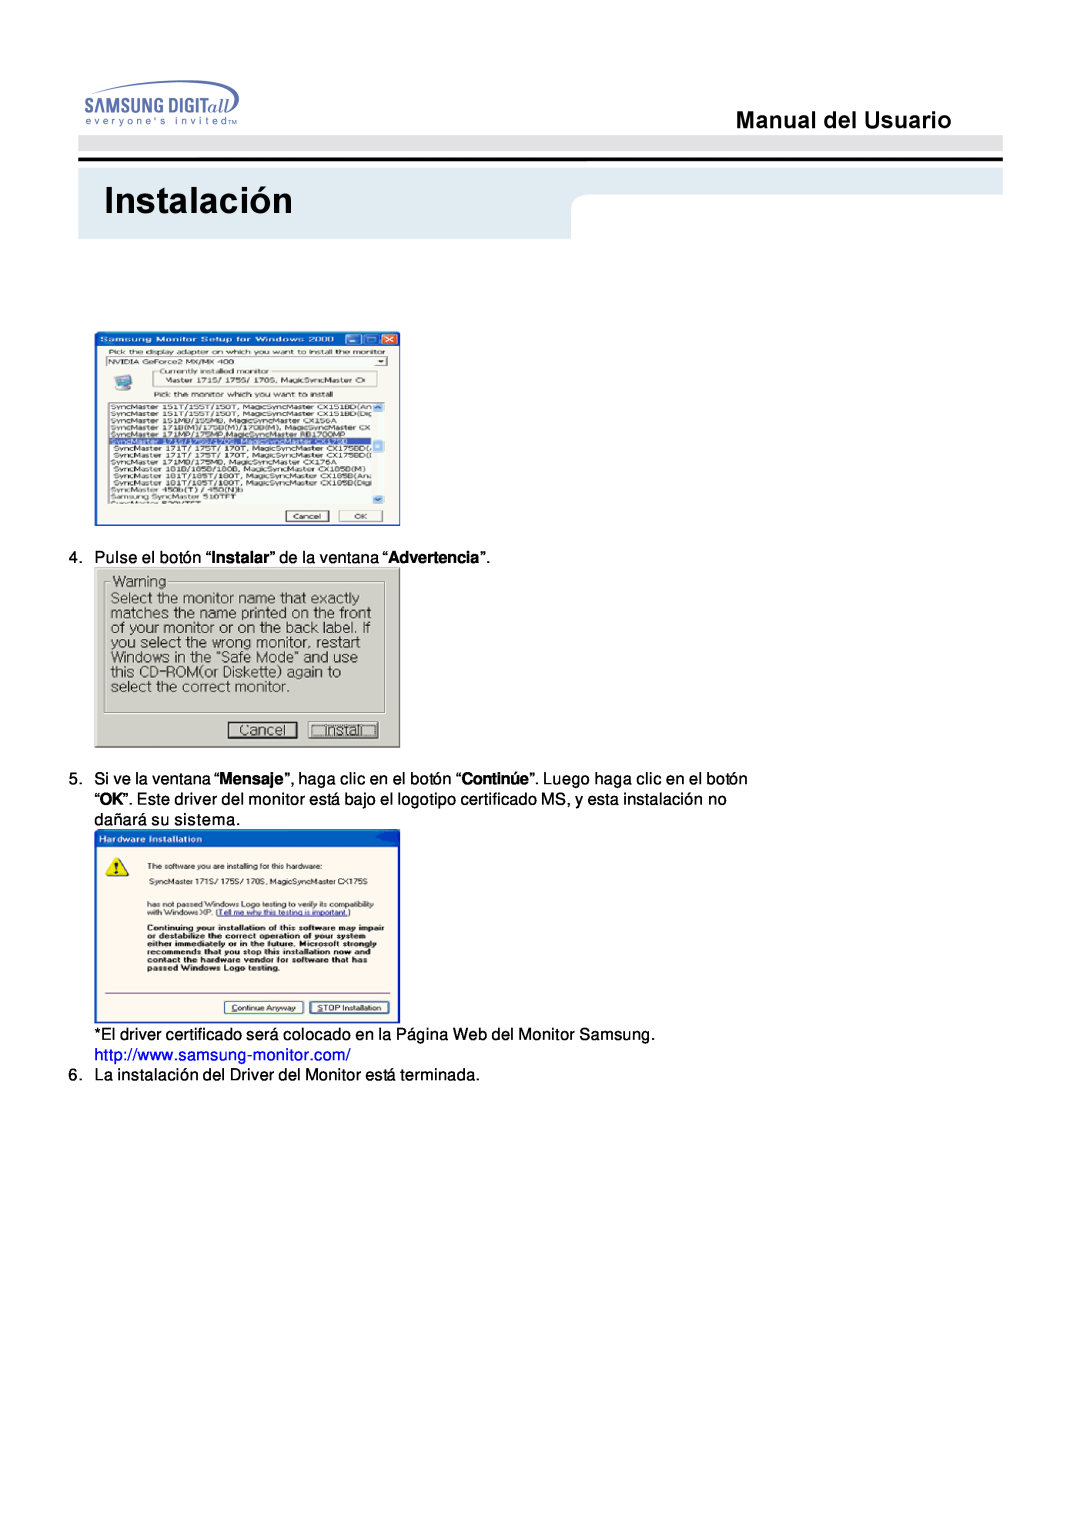 Samsung 153S manual Instalación, Manual del Usuario, Pulse el botón “Instalar” de la ventana “Advertencia” 